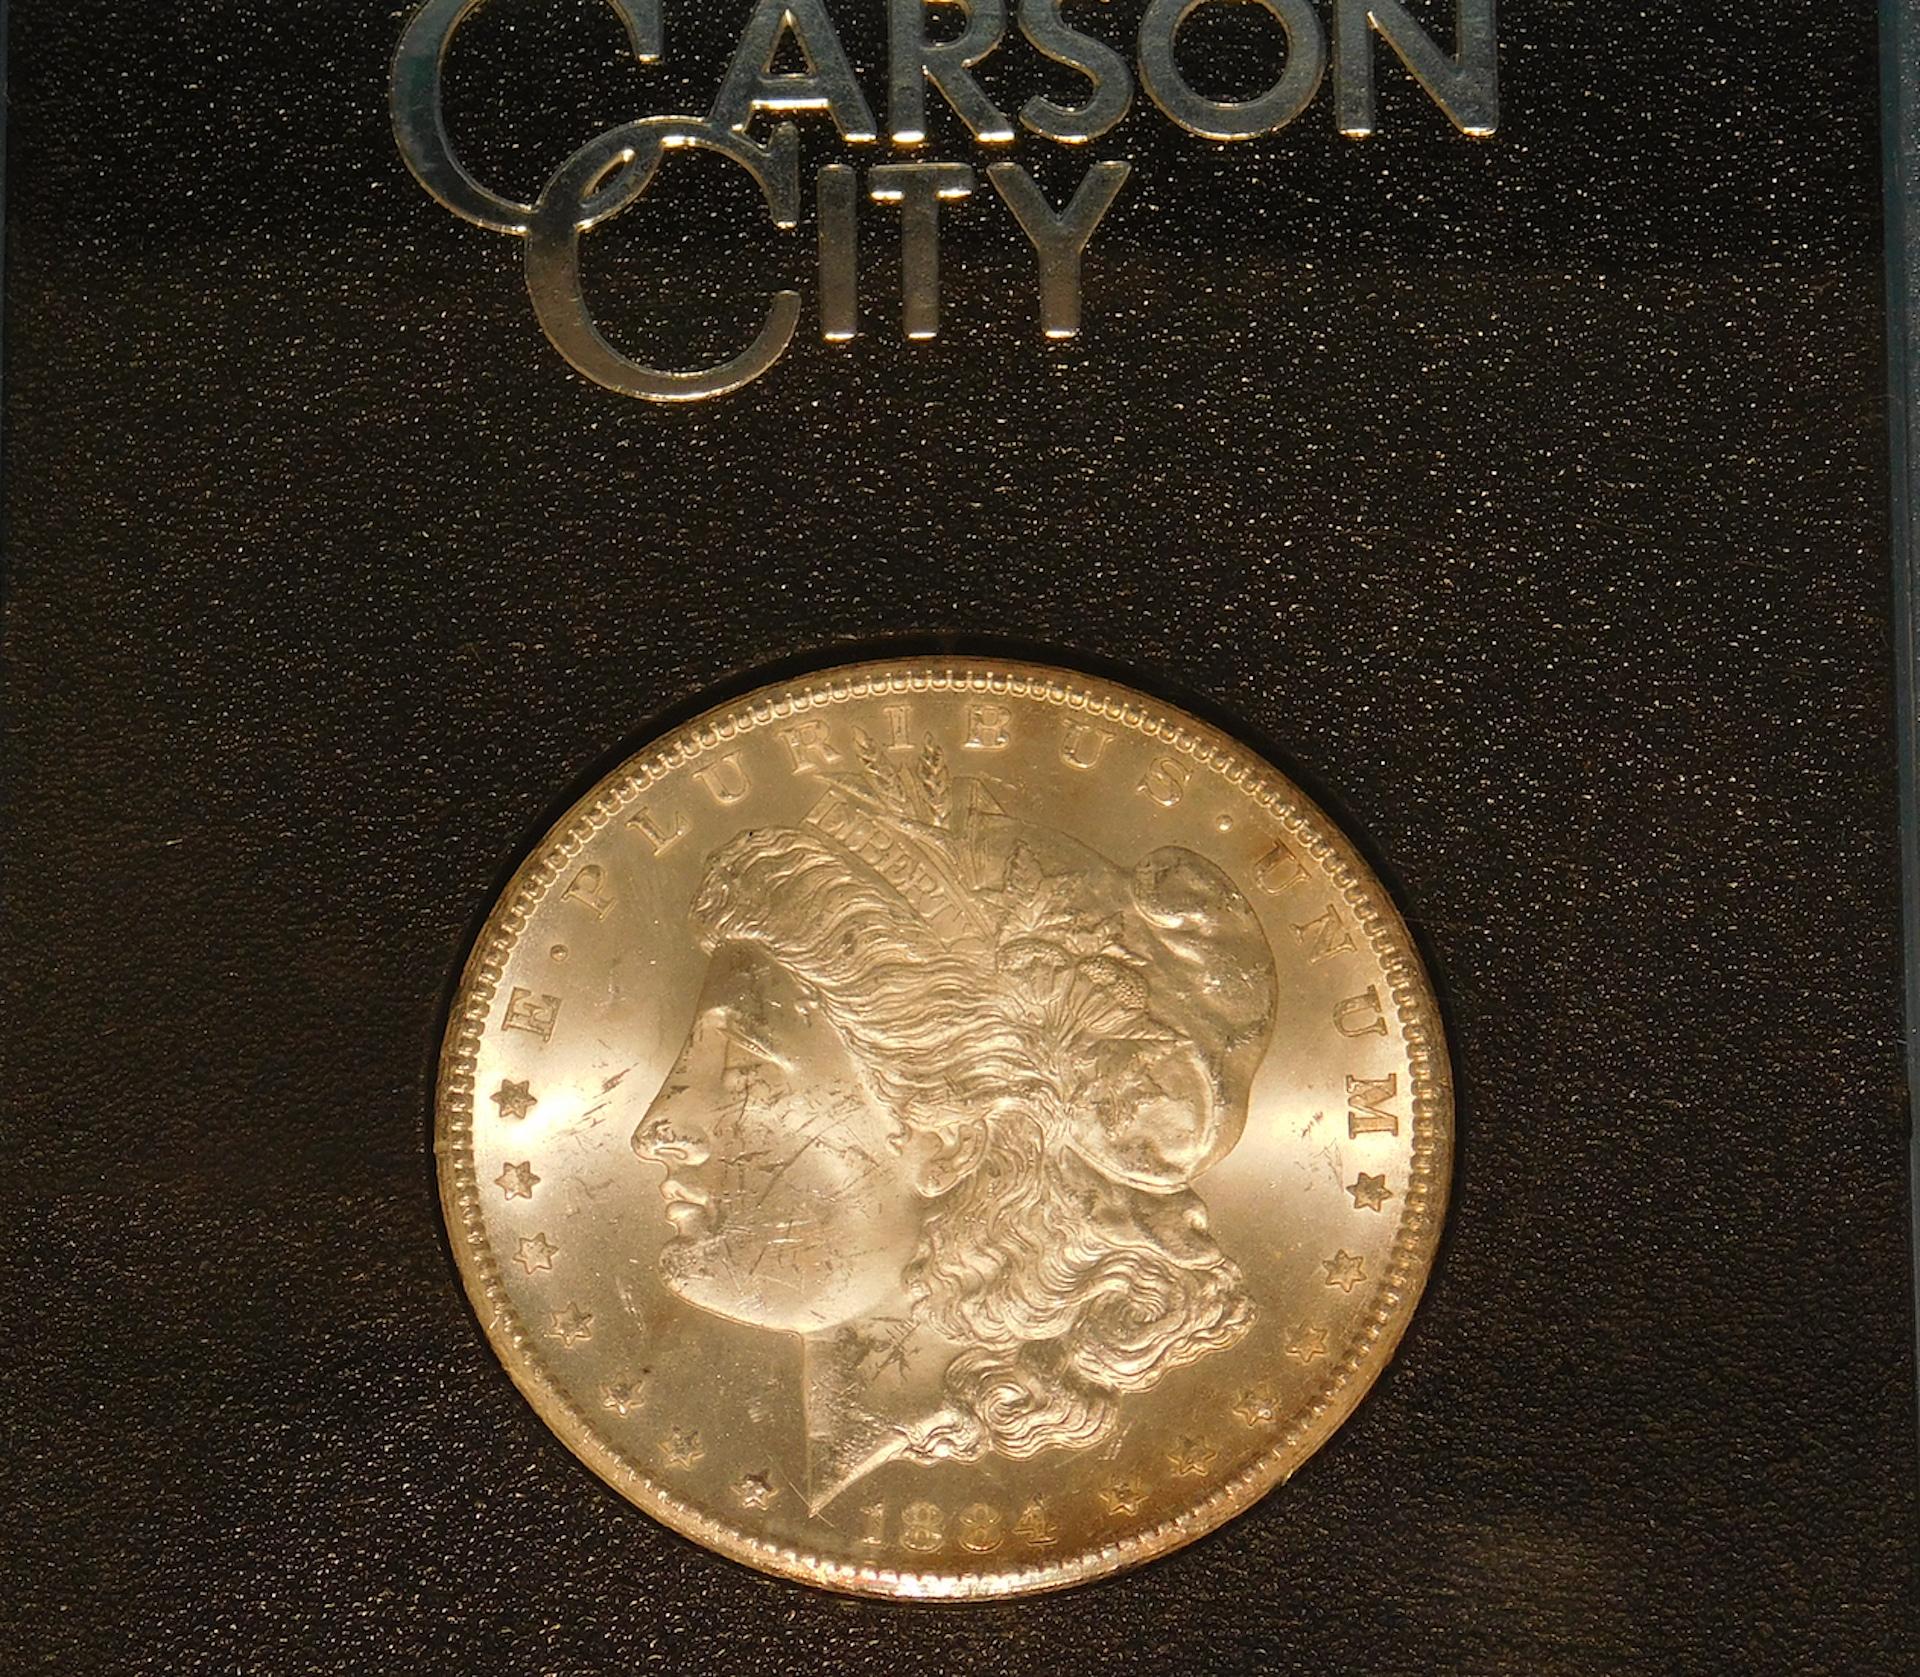 THE CARSON CITY SILVER DOLLAR